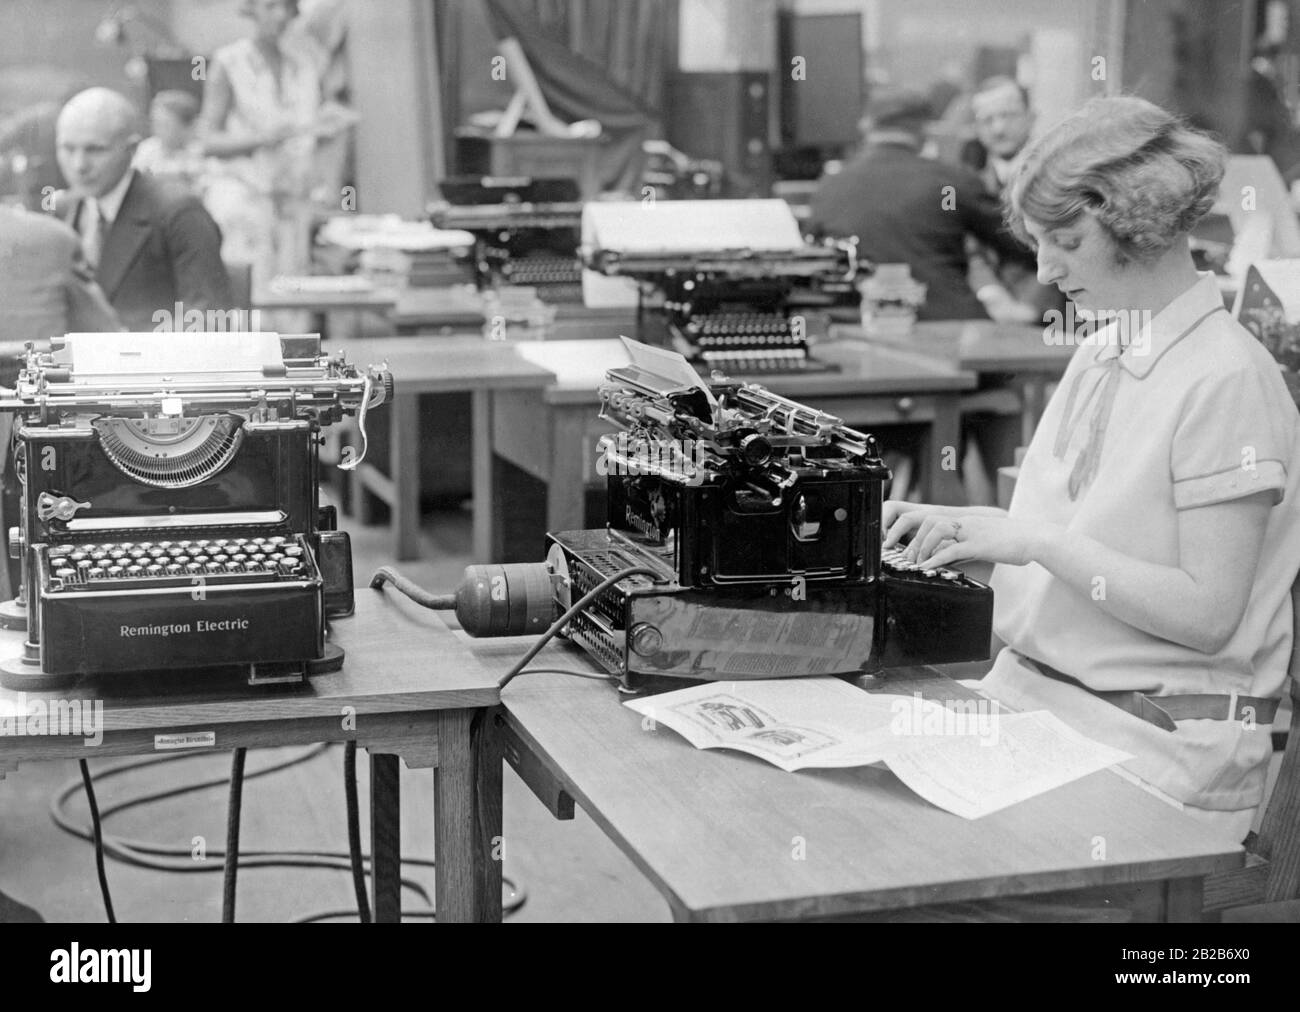 Eine Frau betreibt sechs Schreibmaschinen gleichzeitig. Das Bild wurde anlässlich der Eröffnung der Internationalen Büroausstellung am Kaiserdamm in Berlin veröffentlicht. Es präsentiert die neue Remington Electric, eine Neuerung der Remington Society, die den gleichzeitigen Einsatz mehrerer Maschinen mittels elektrischer Kupplung ermöglichte. Stockfoto